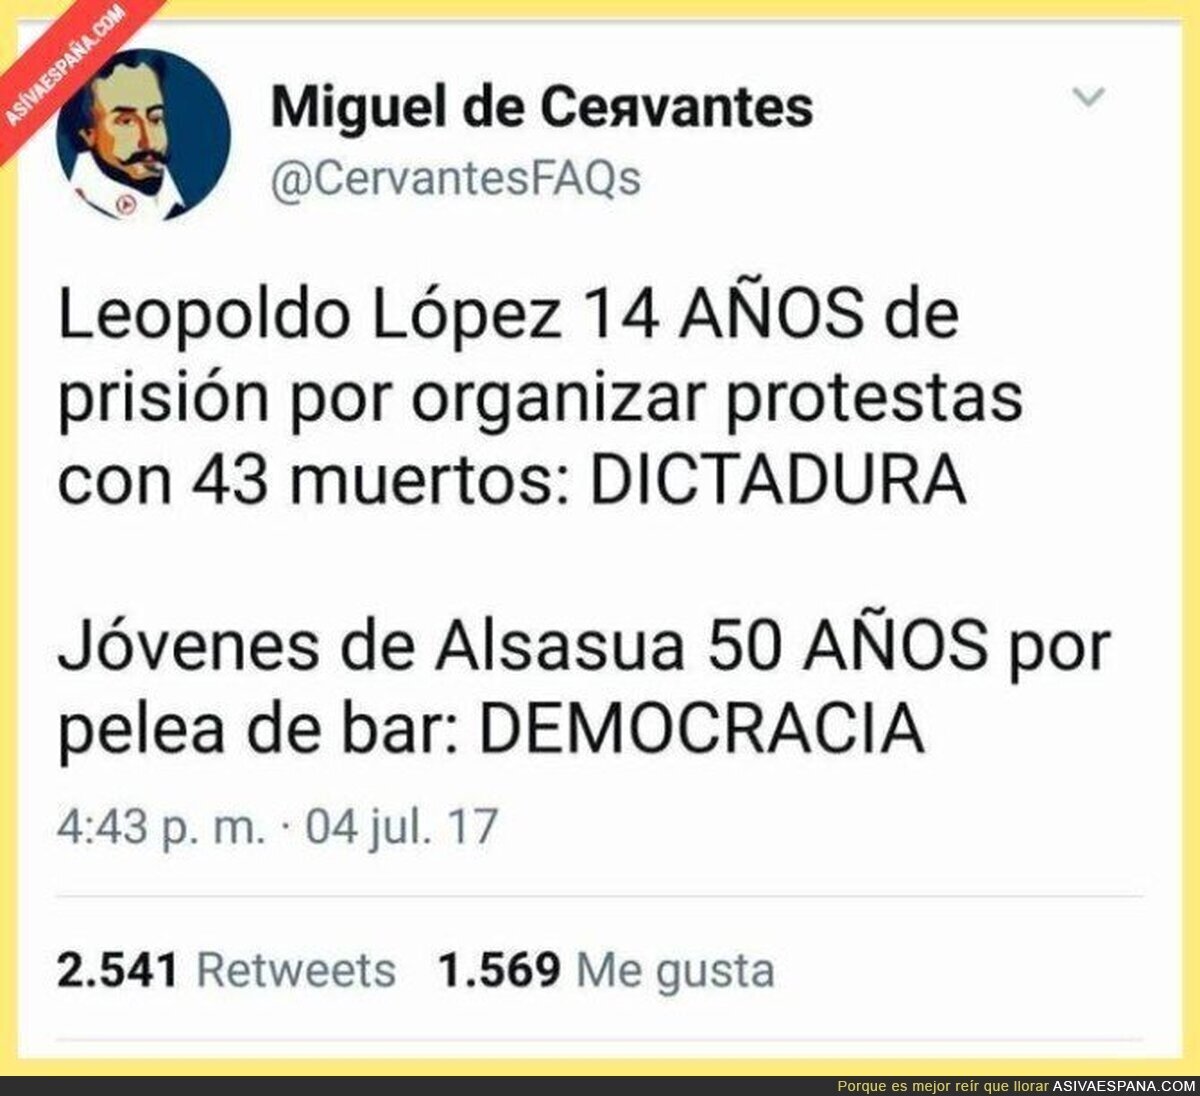 La gran diferencia entre España y Venezuela